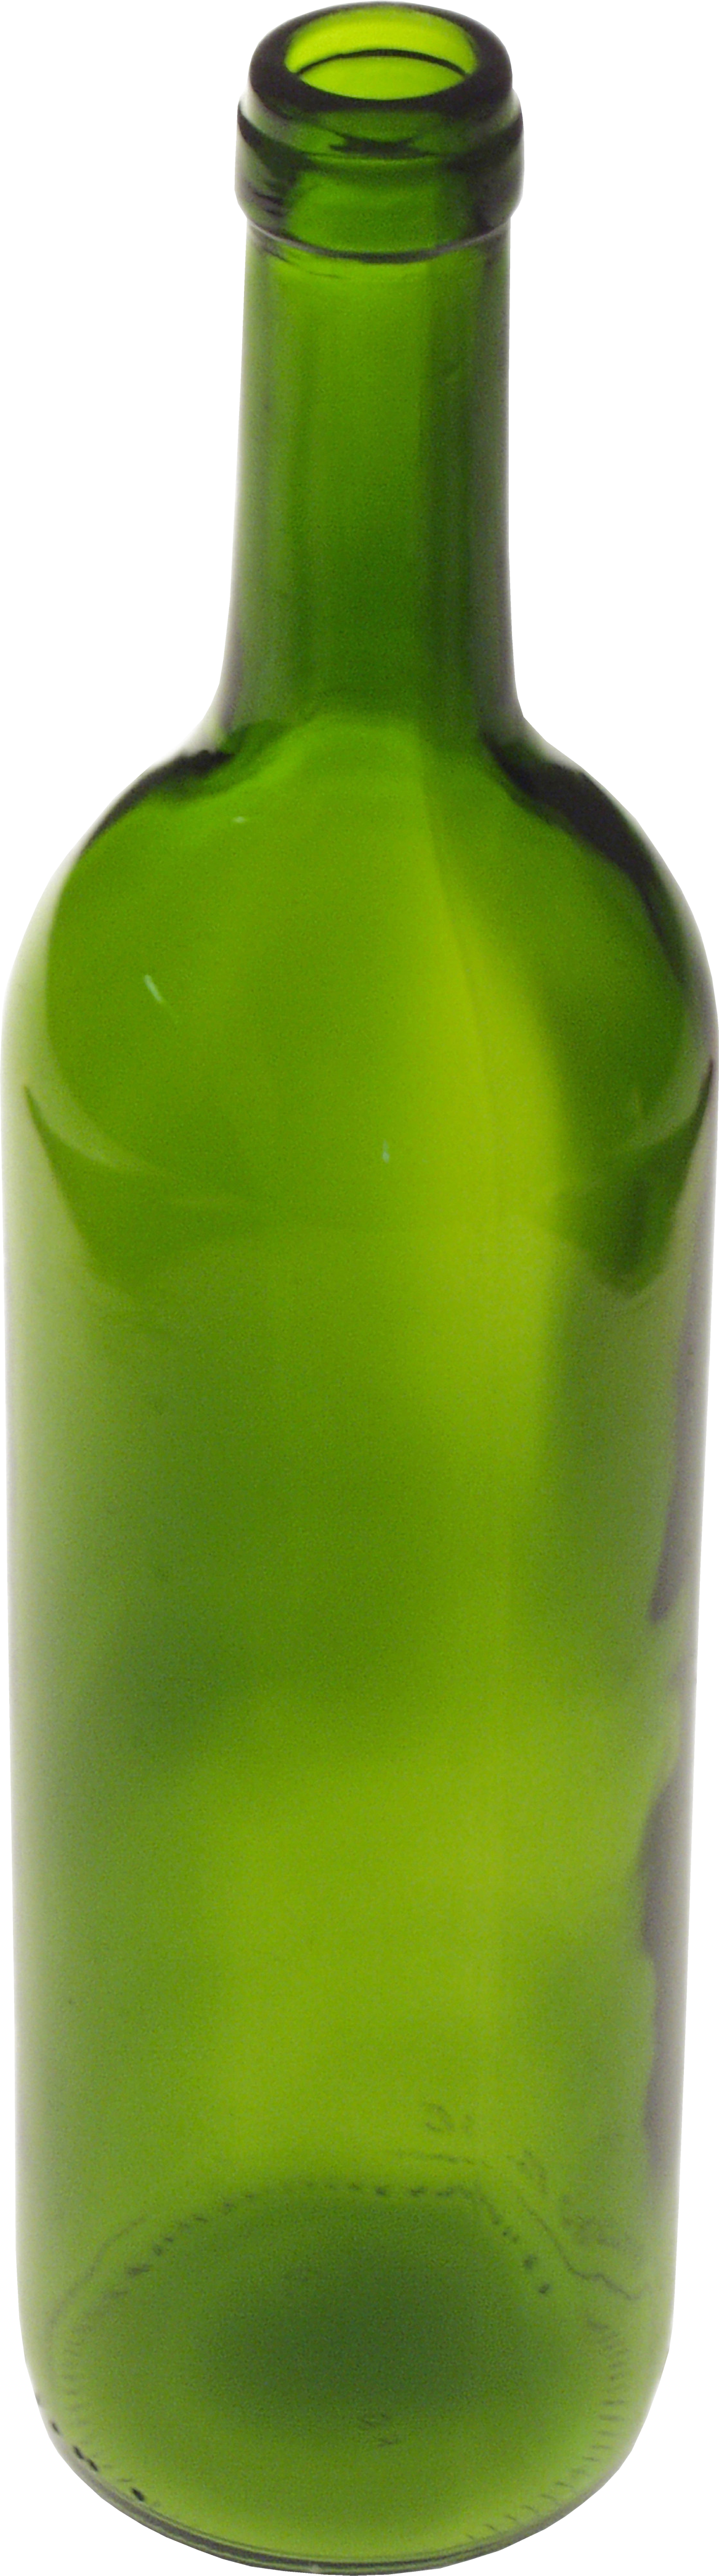 हरी कांच की बोतल